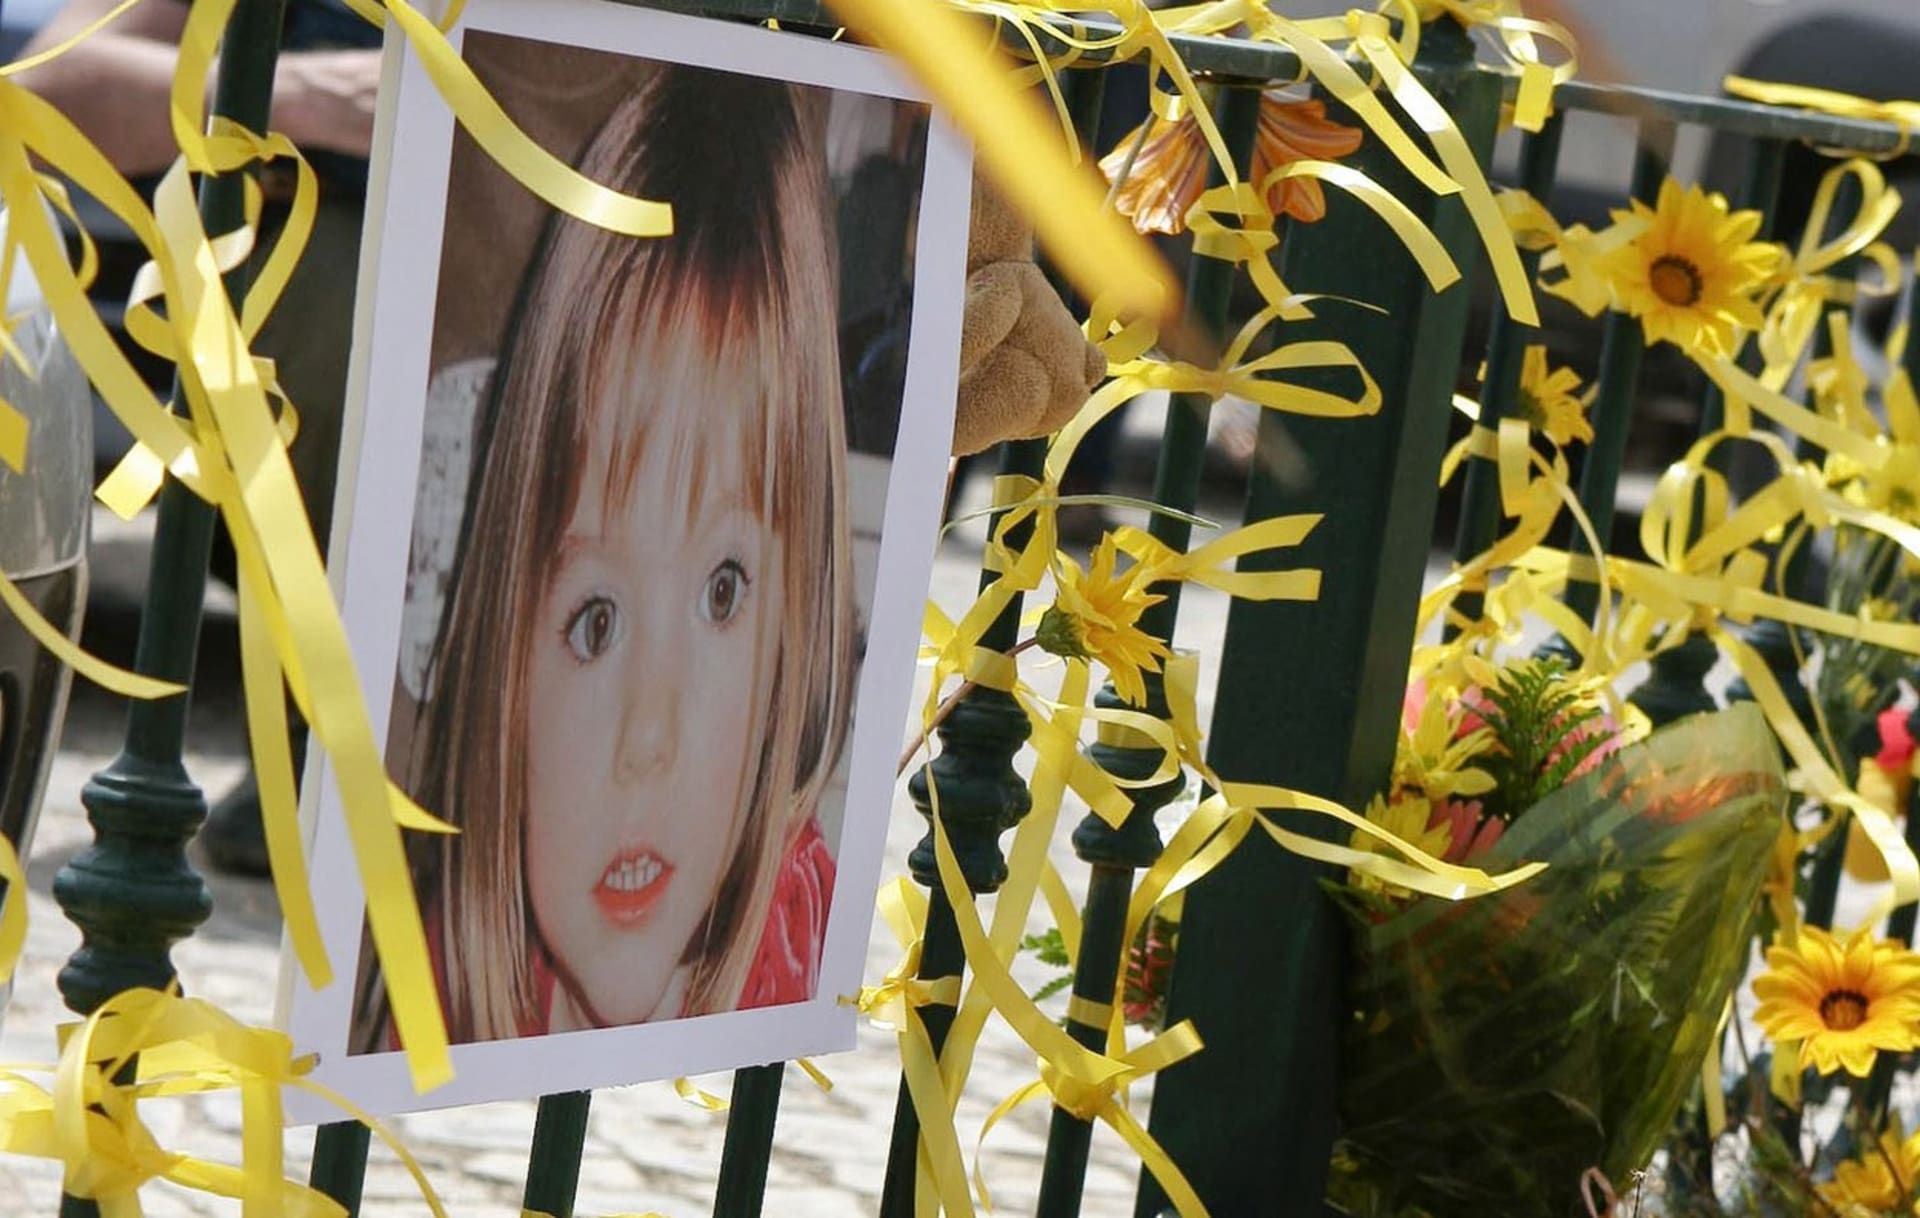 Tehdy tříletá Madeleine McCannová zmizela v roce 2007 z portugalského letoviska. Za hlavního podezřelého je nyní považován 44letý Němec.